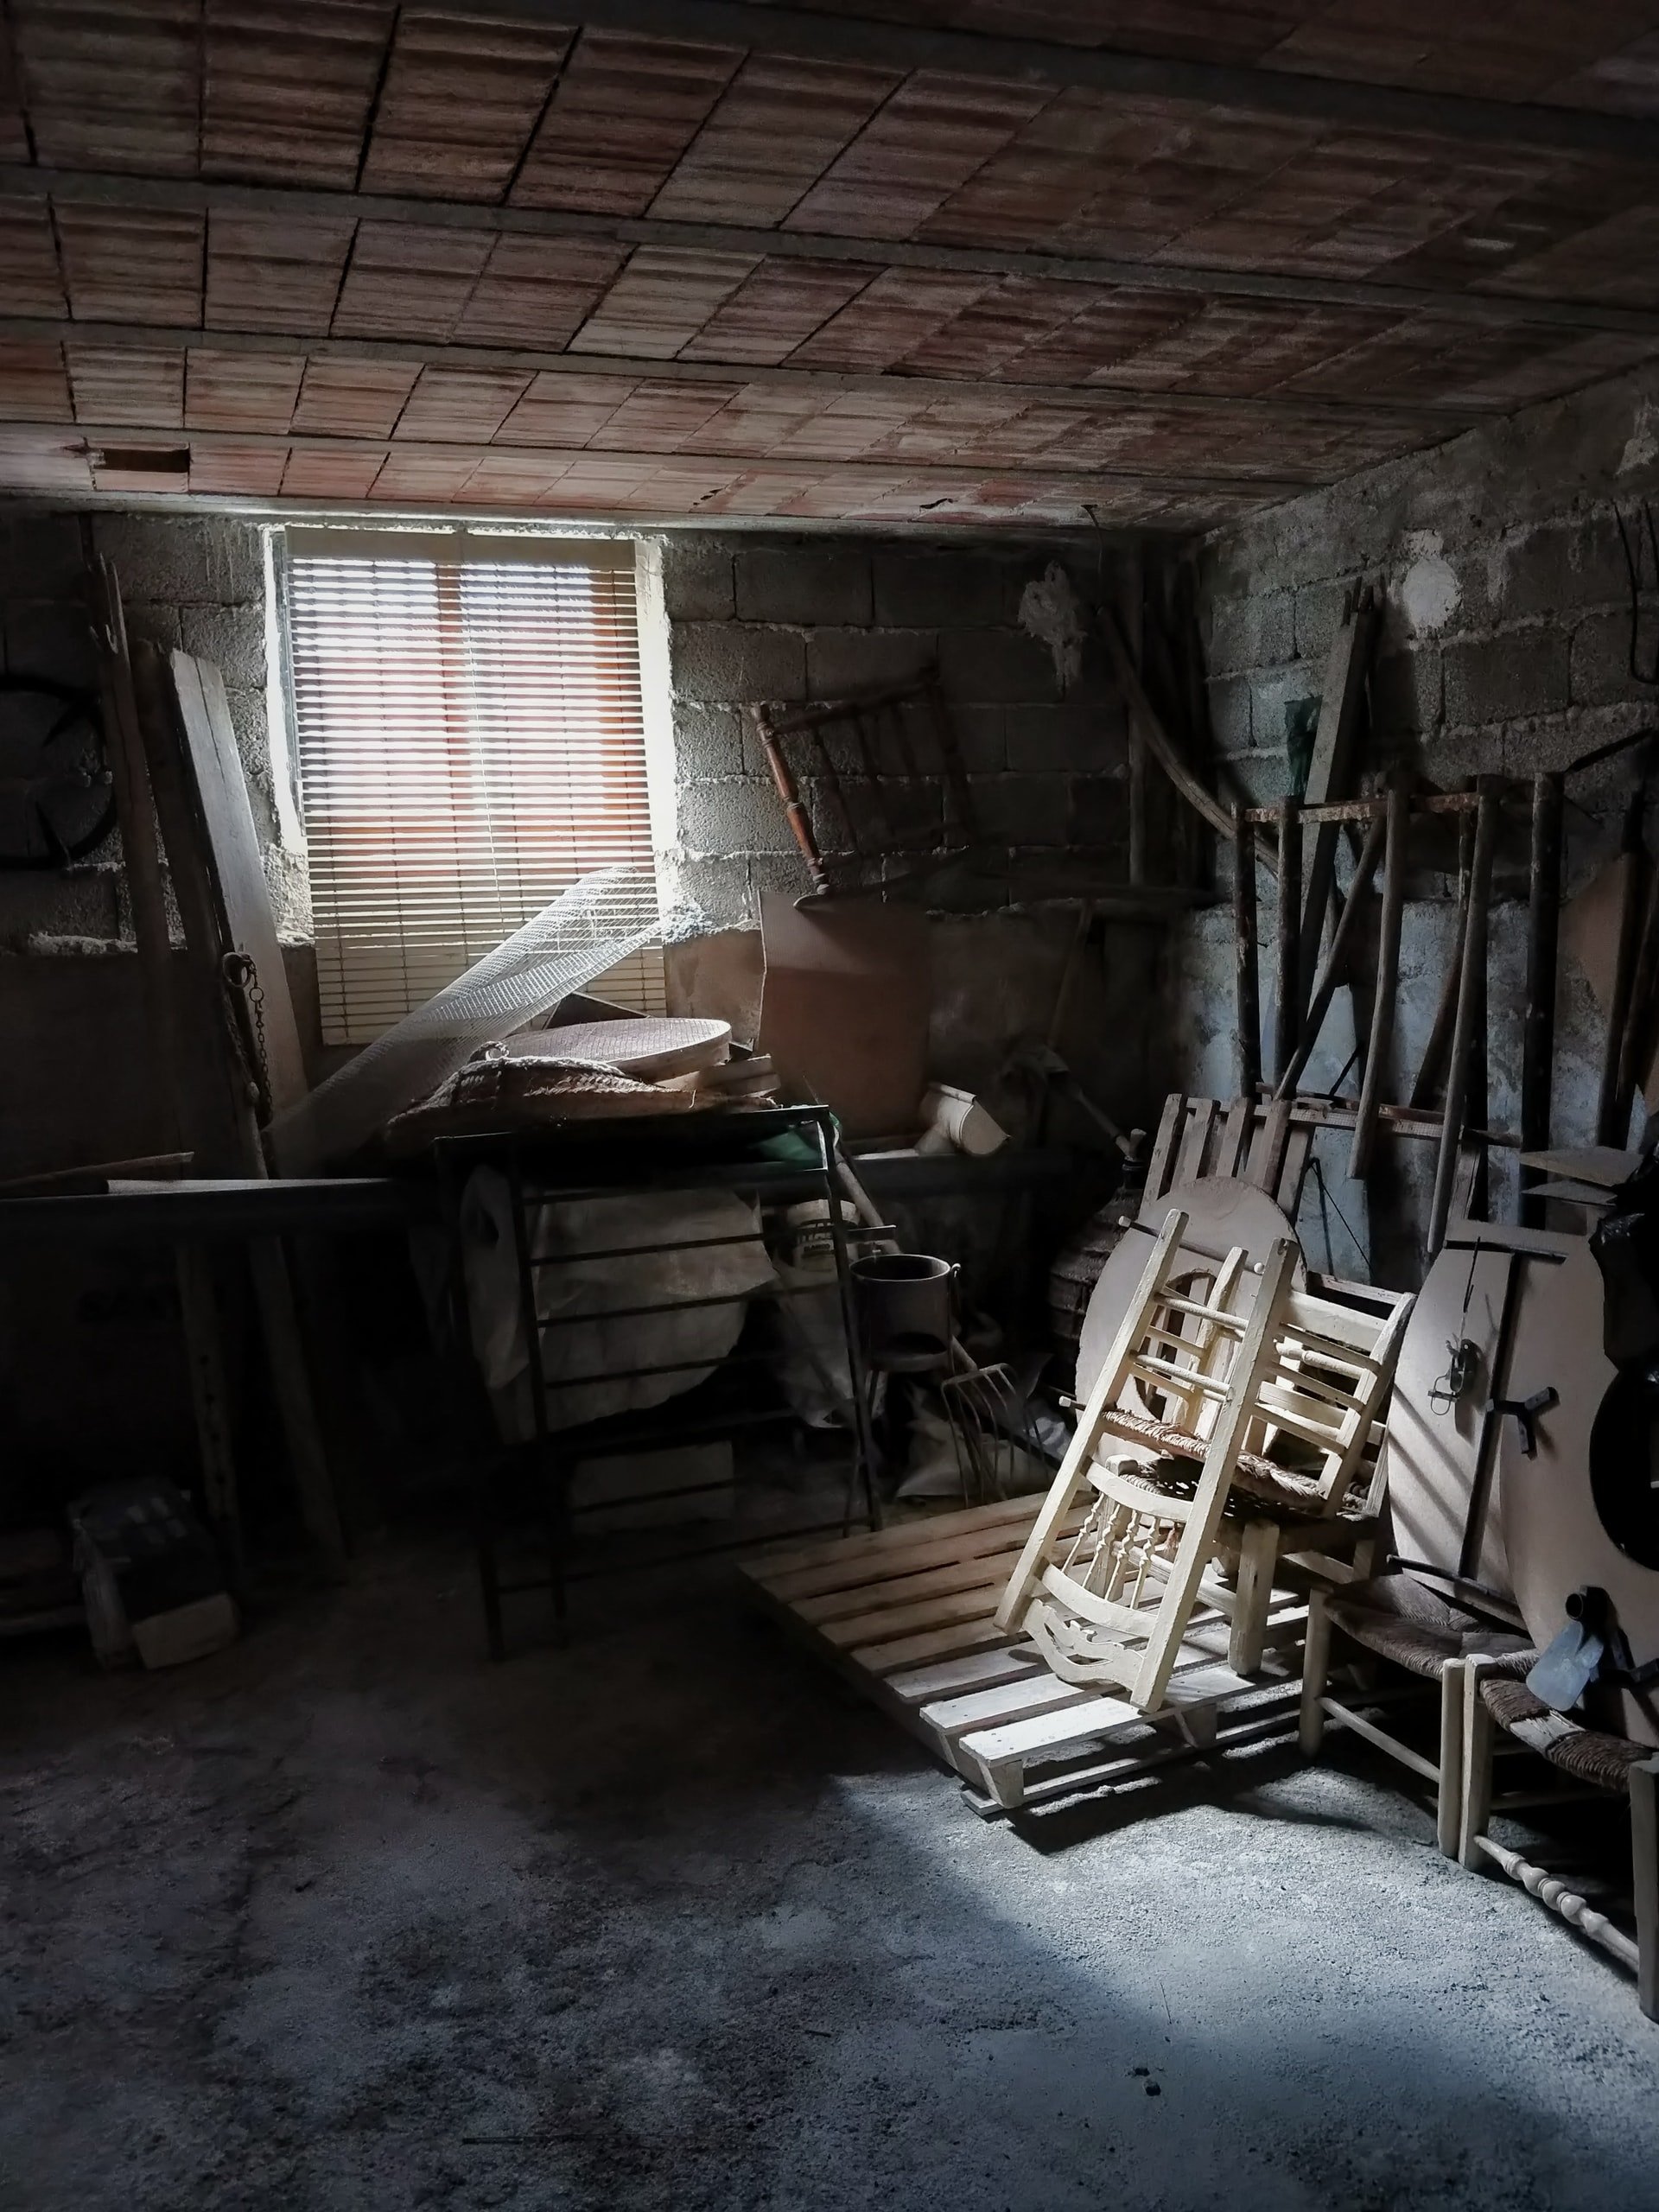 The door led to a basement with hidden treasures. | Source: Unsplash